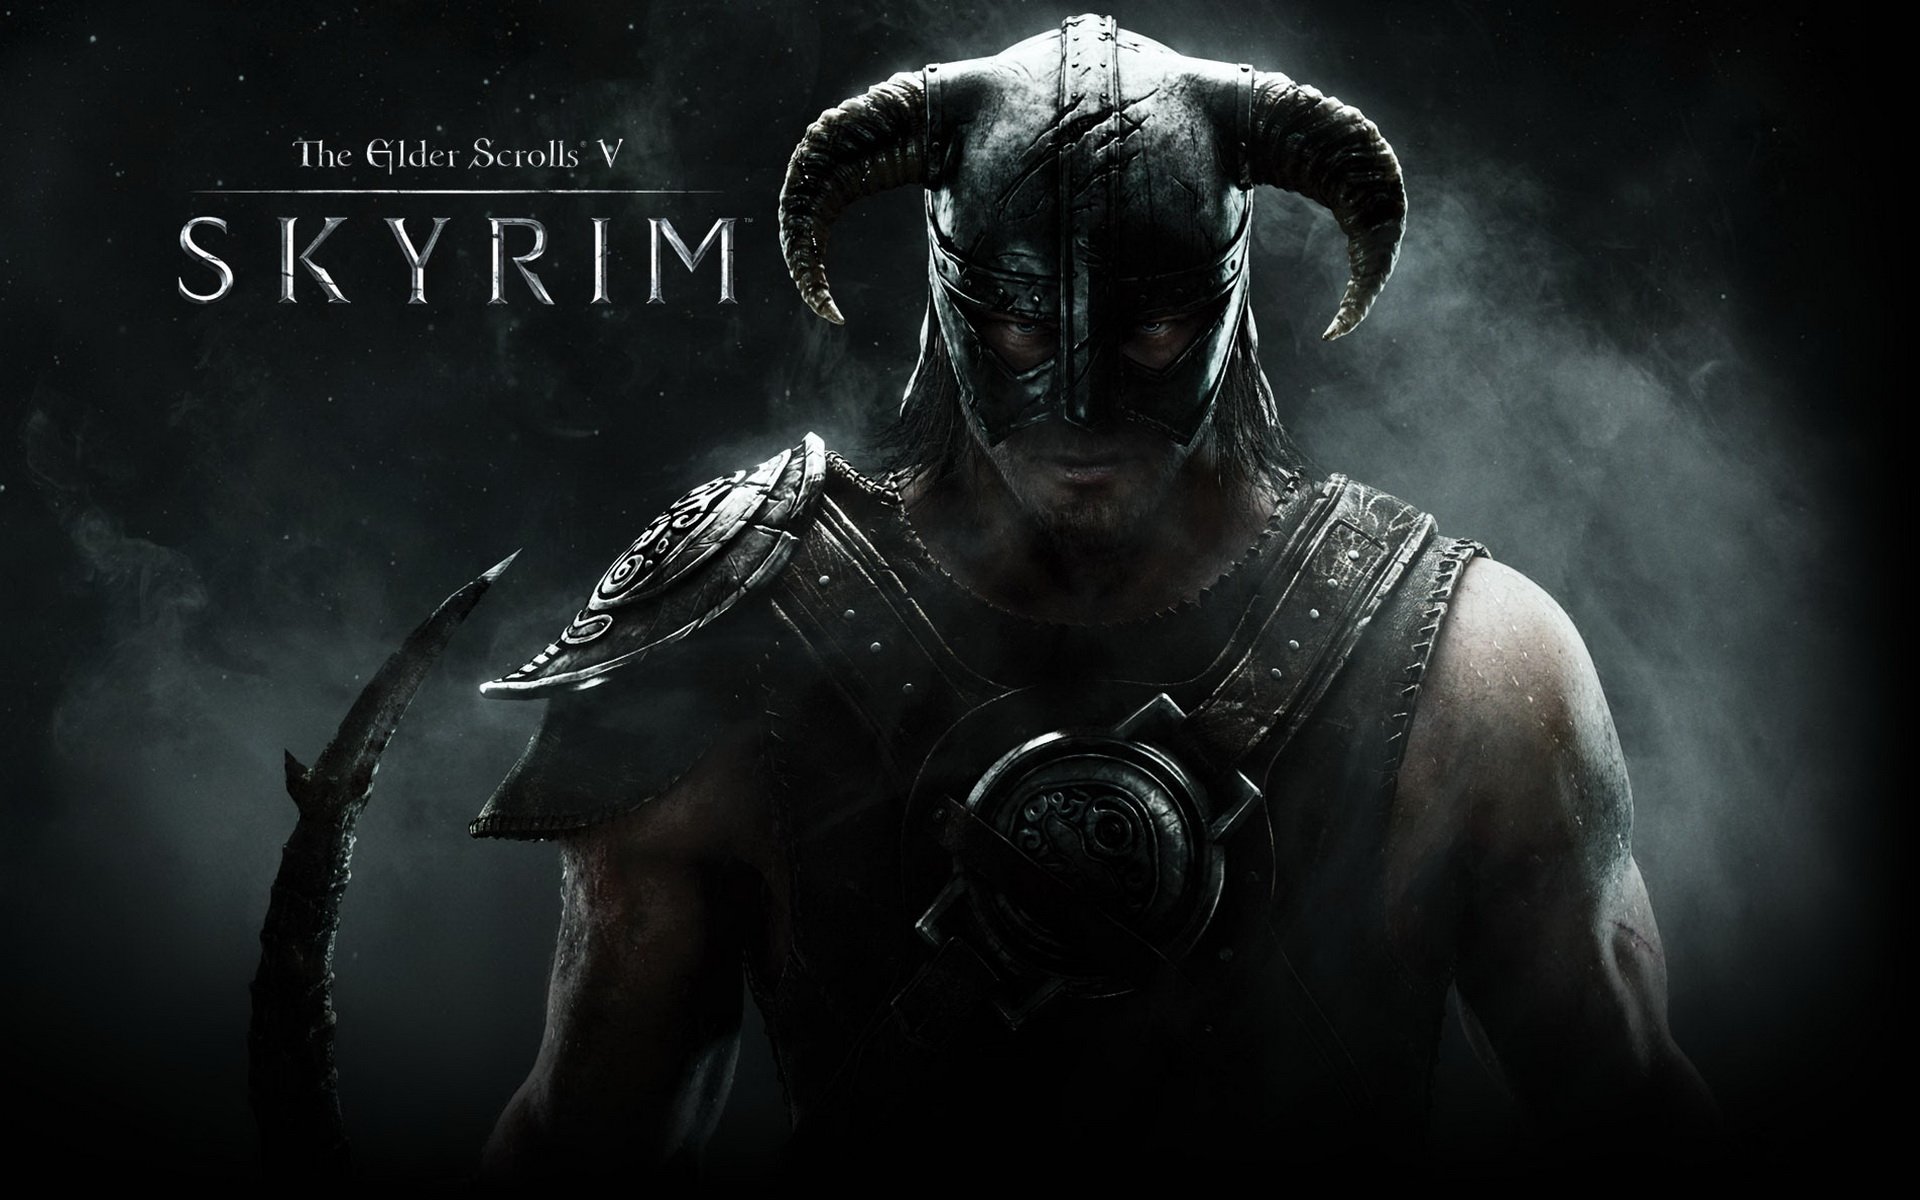 The Elder Scrolls Skyrim já está disponível gratuitamente na Xbox Game Pass